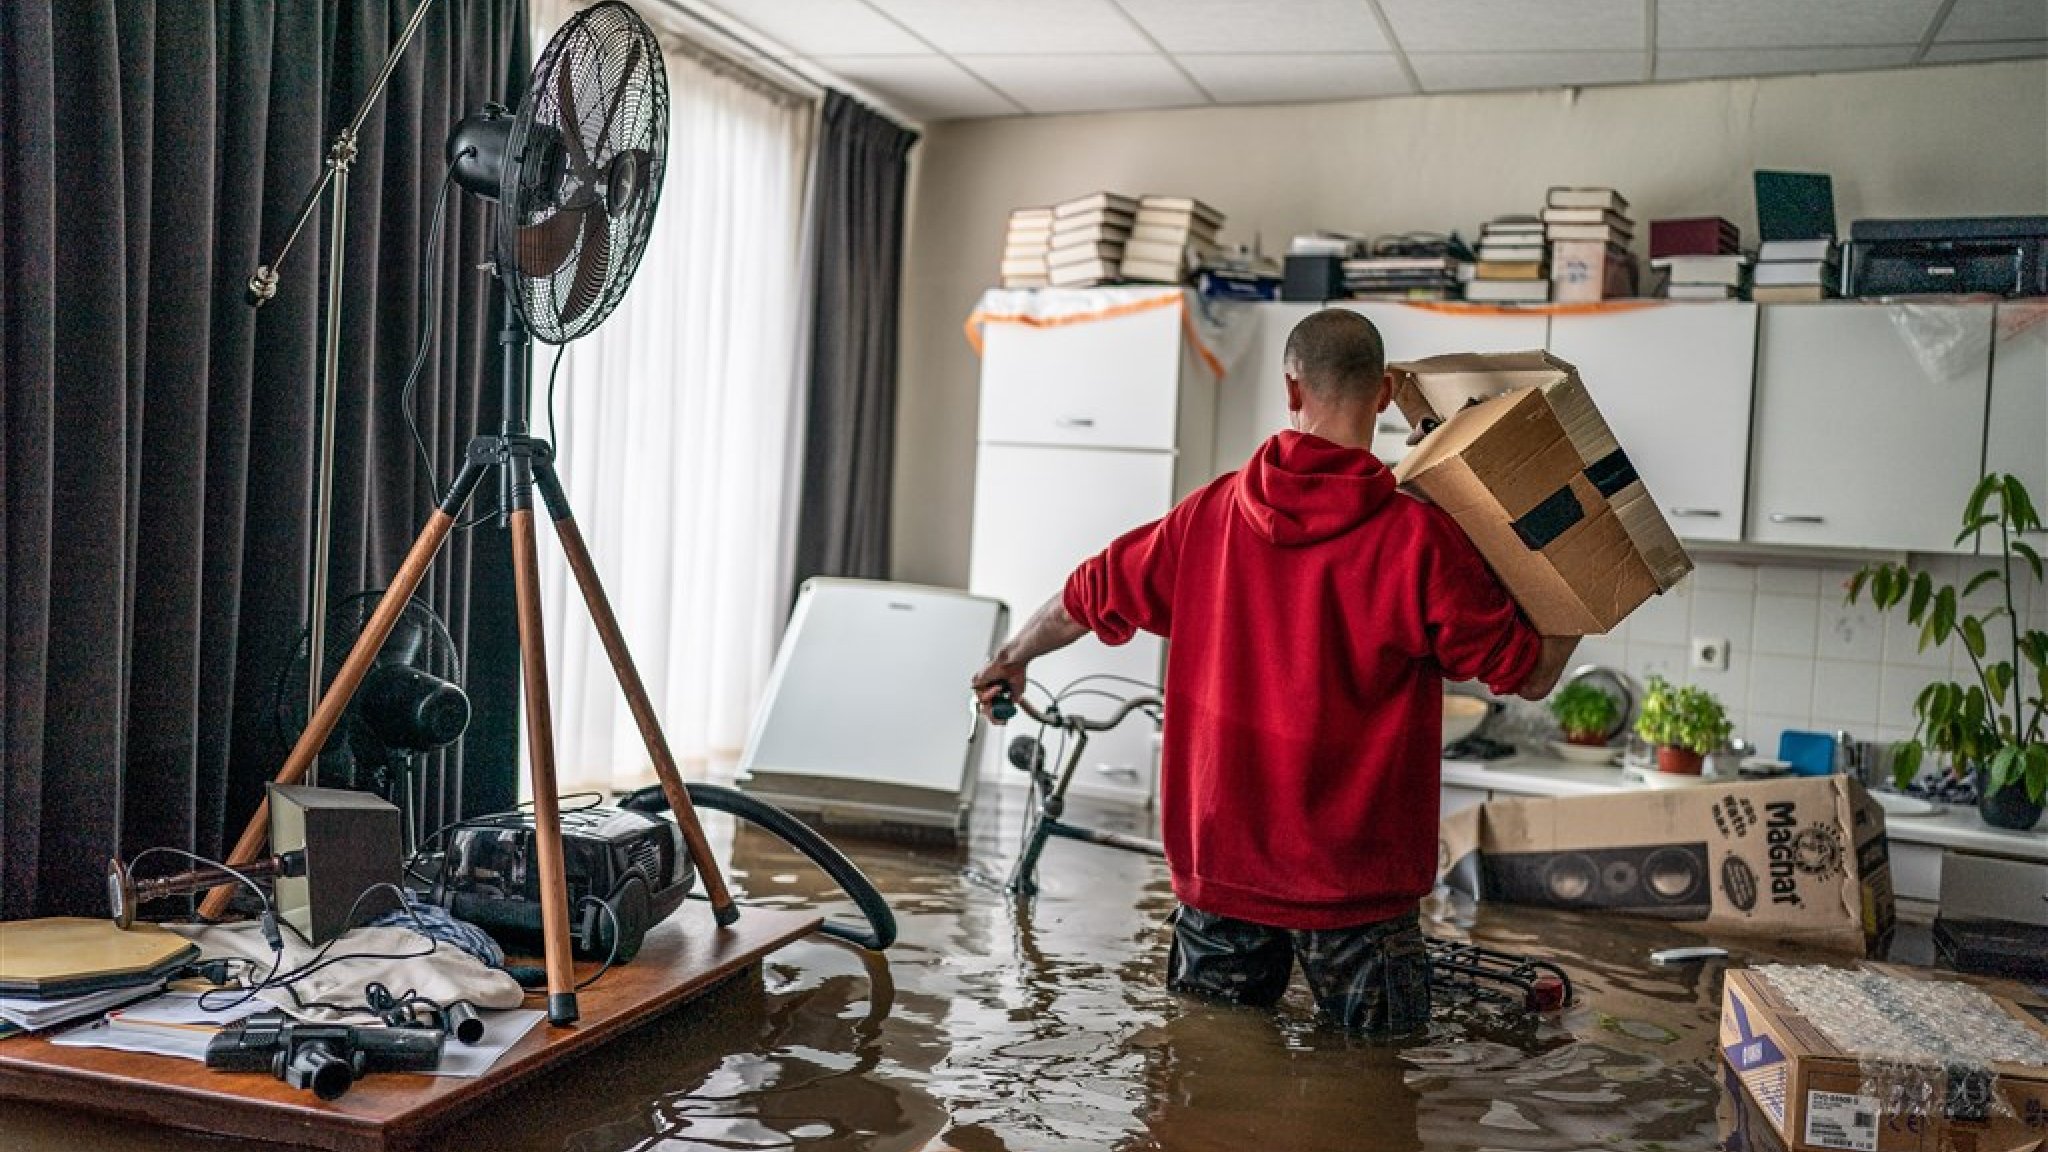 Limburg Flood Loop for ASR: 20 to 30 million